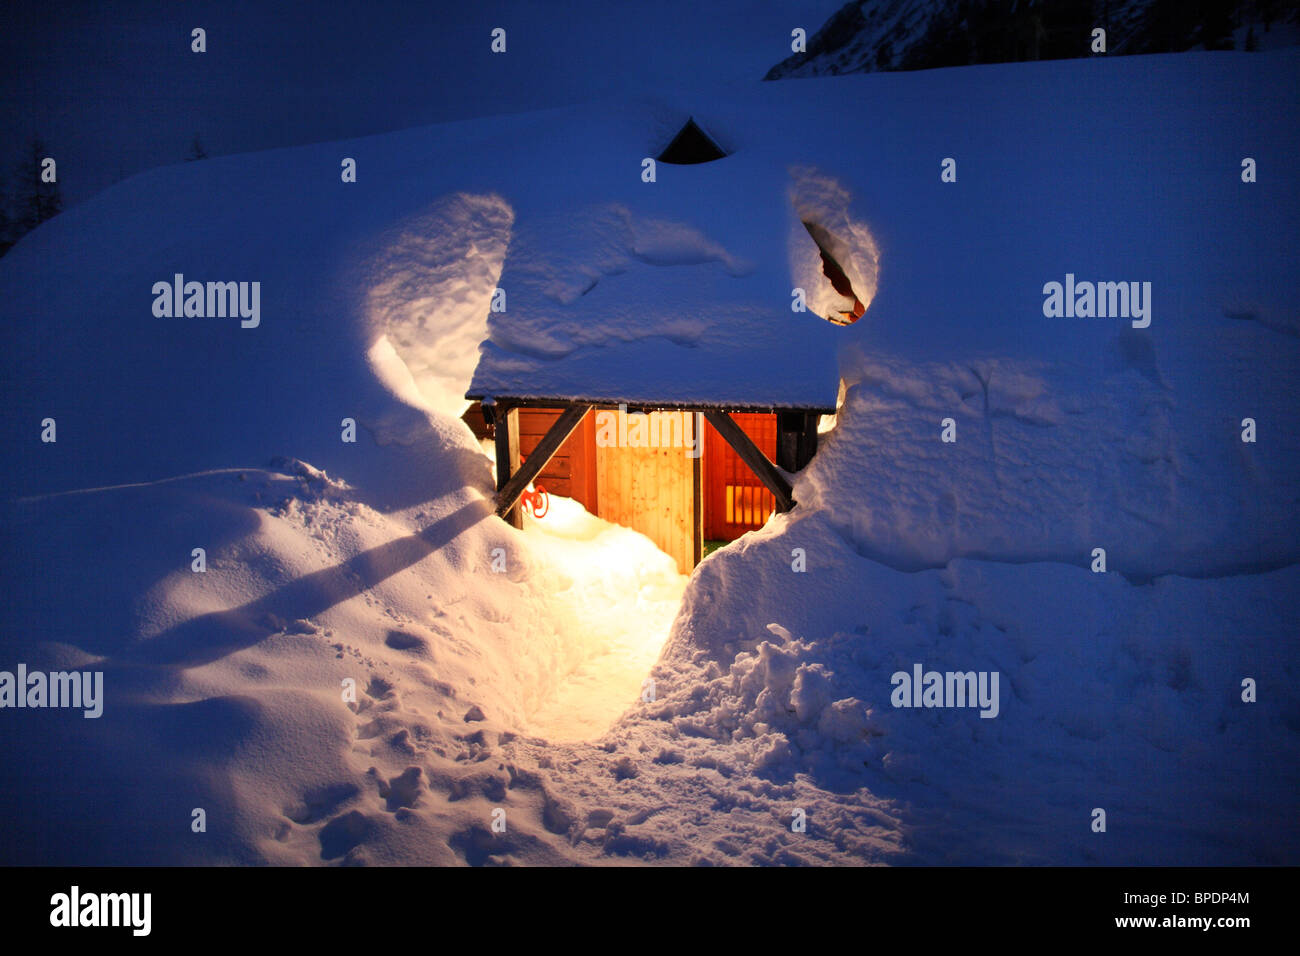 Holzhütte unter Schneemassen, Startstelle, Österreich Stockfoto